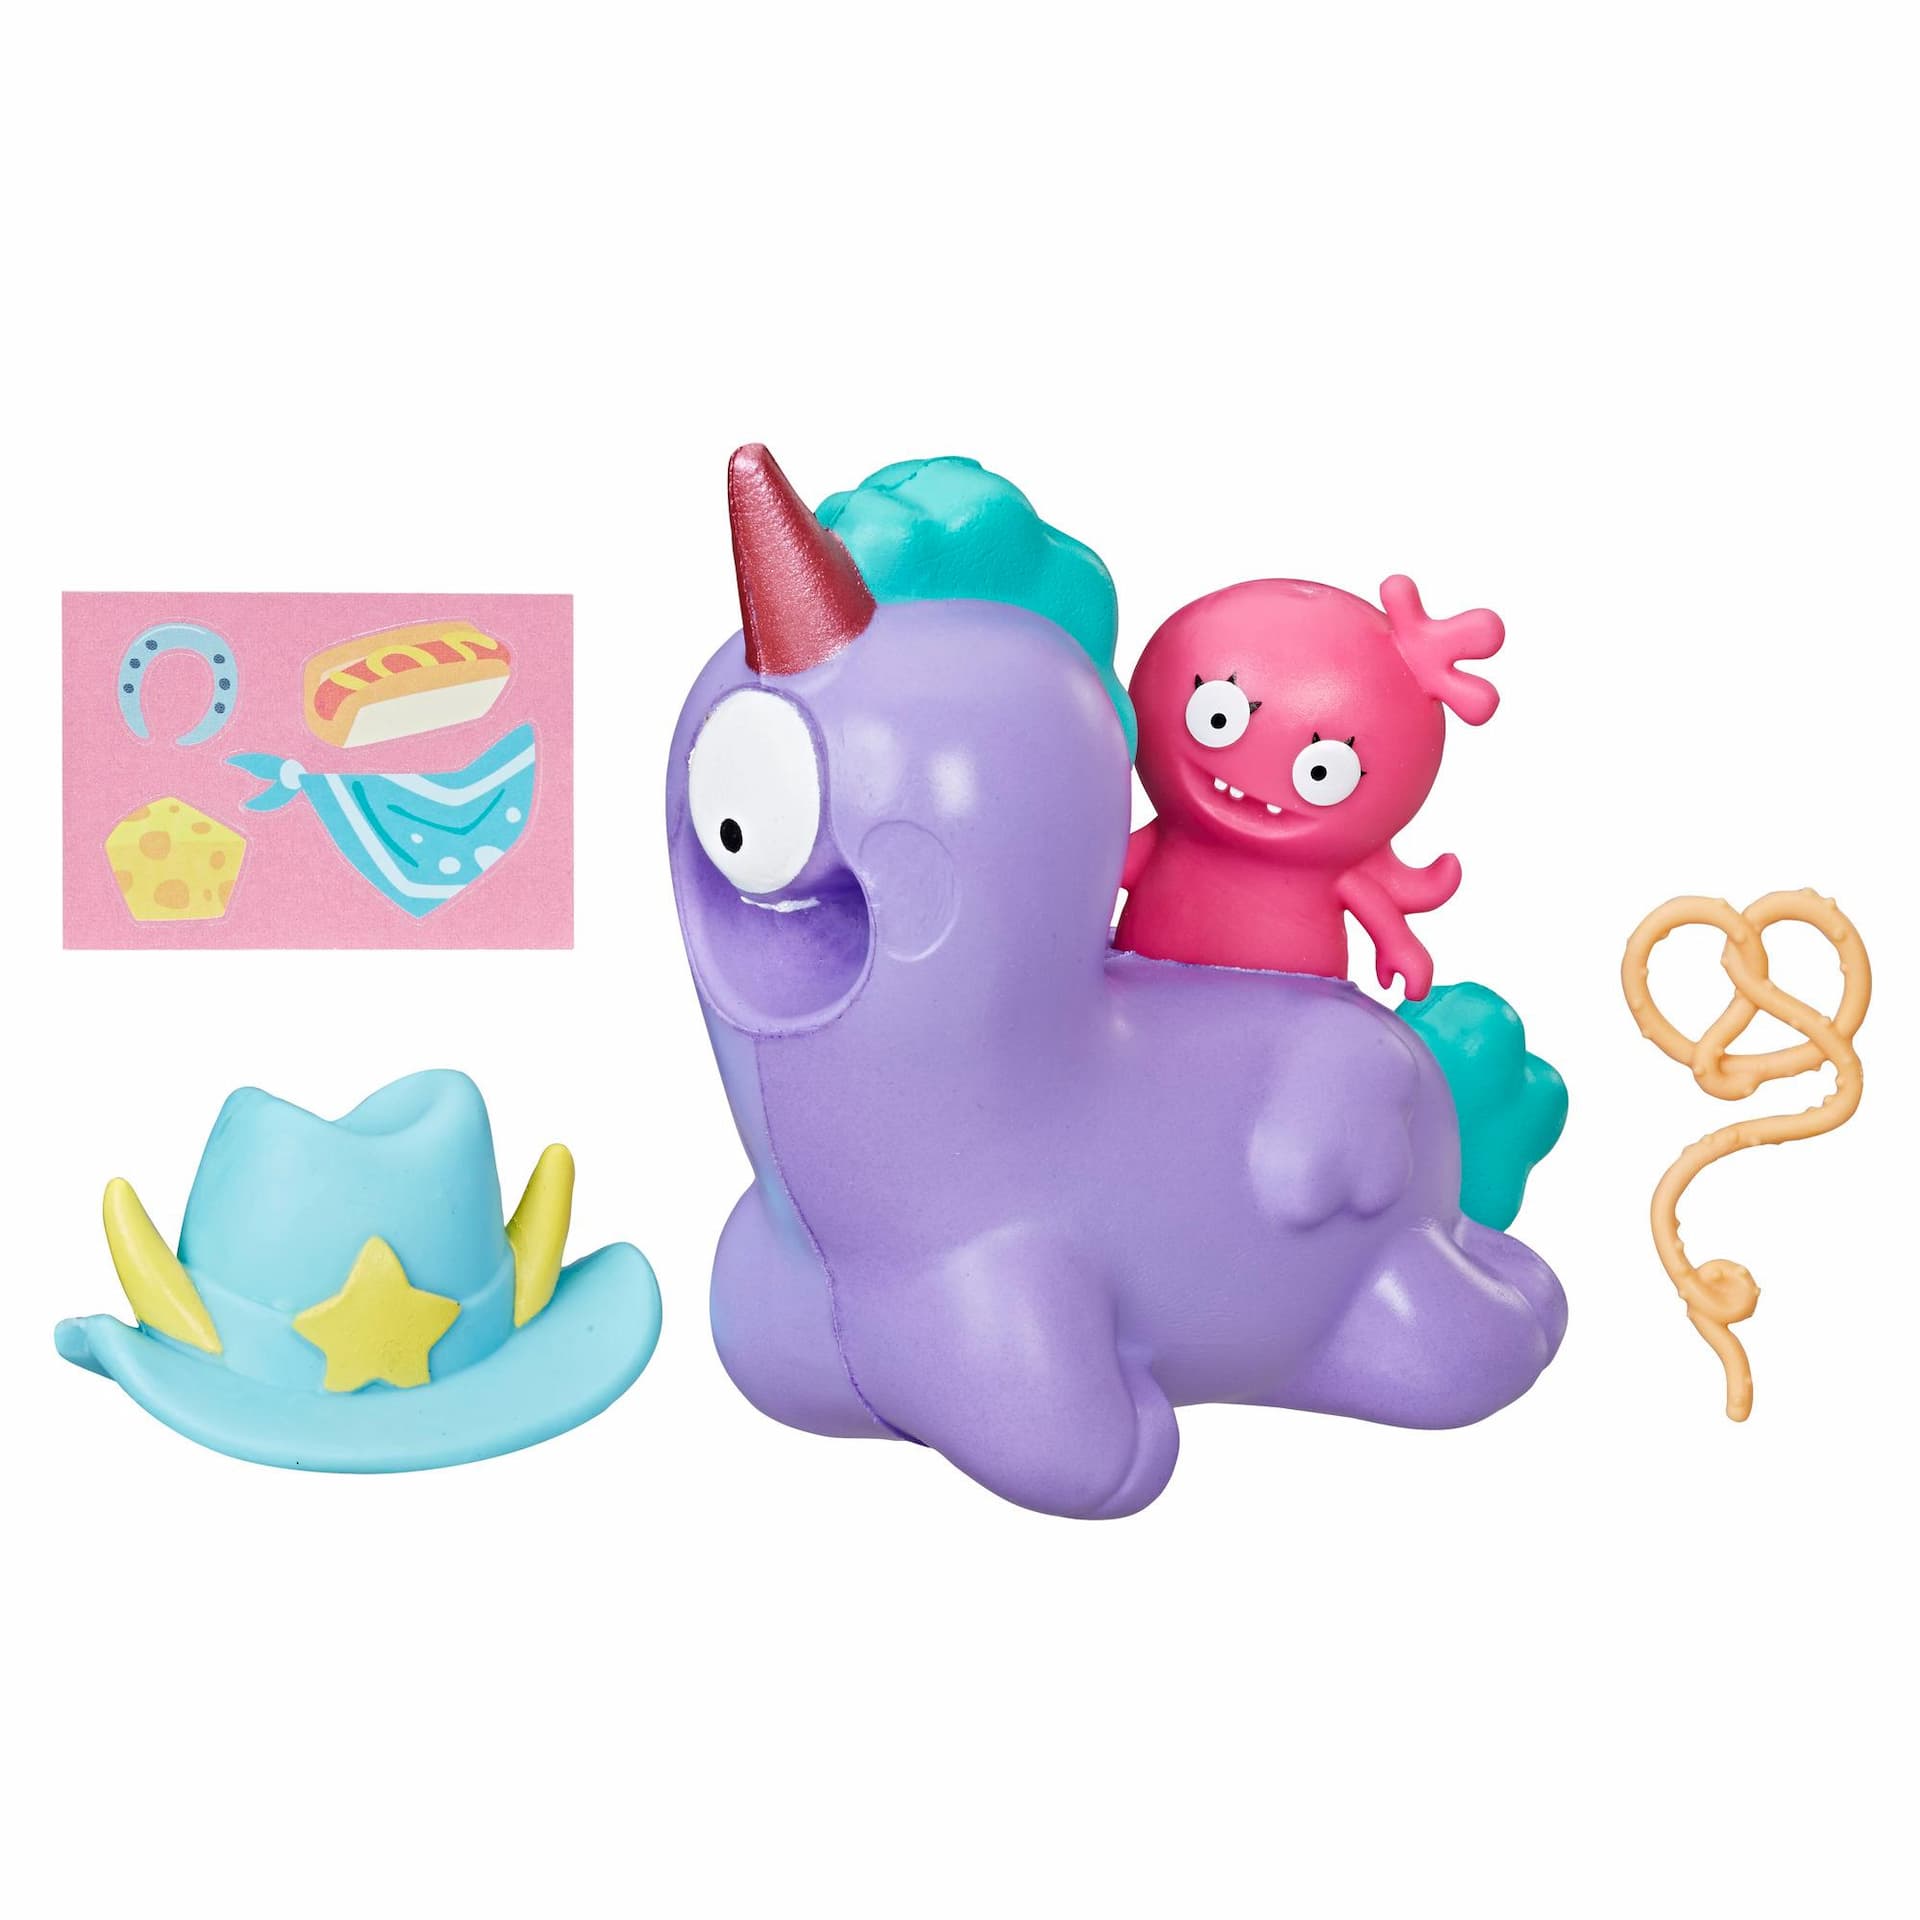 UglyDolls Moxy y Peggy-móvil blandito, 2 figuras de juguete con accesorios